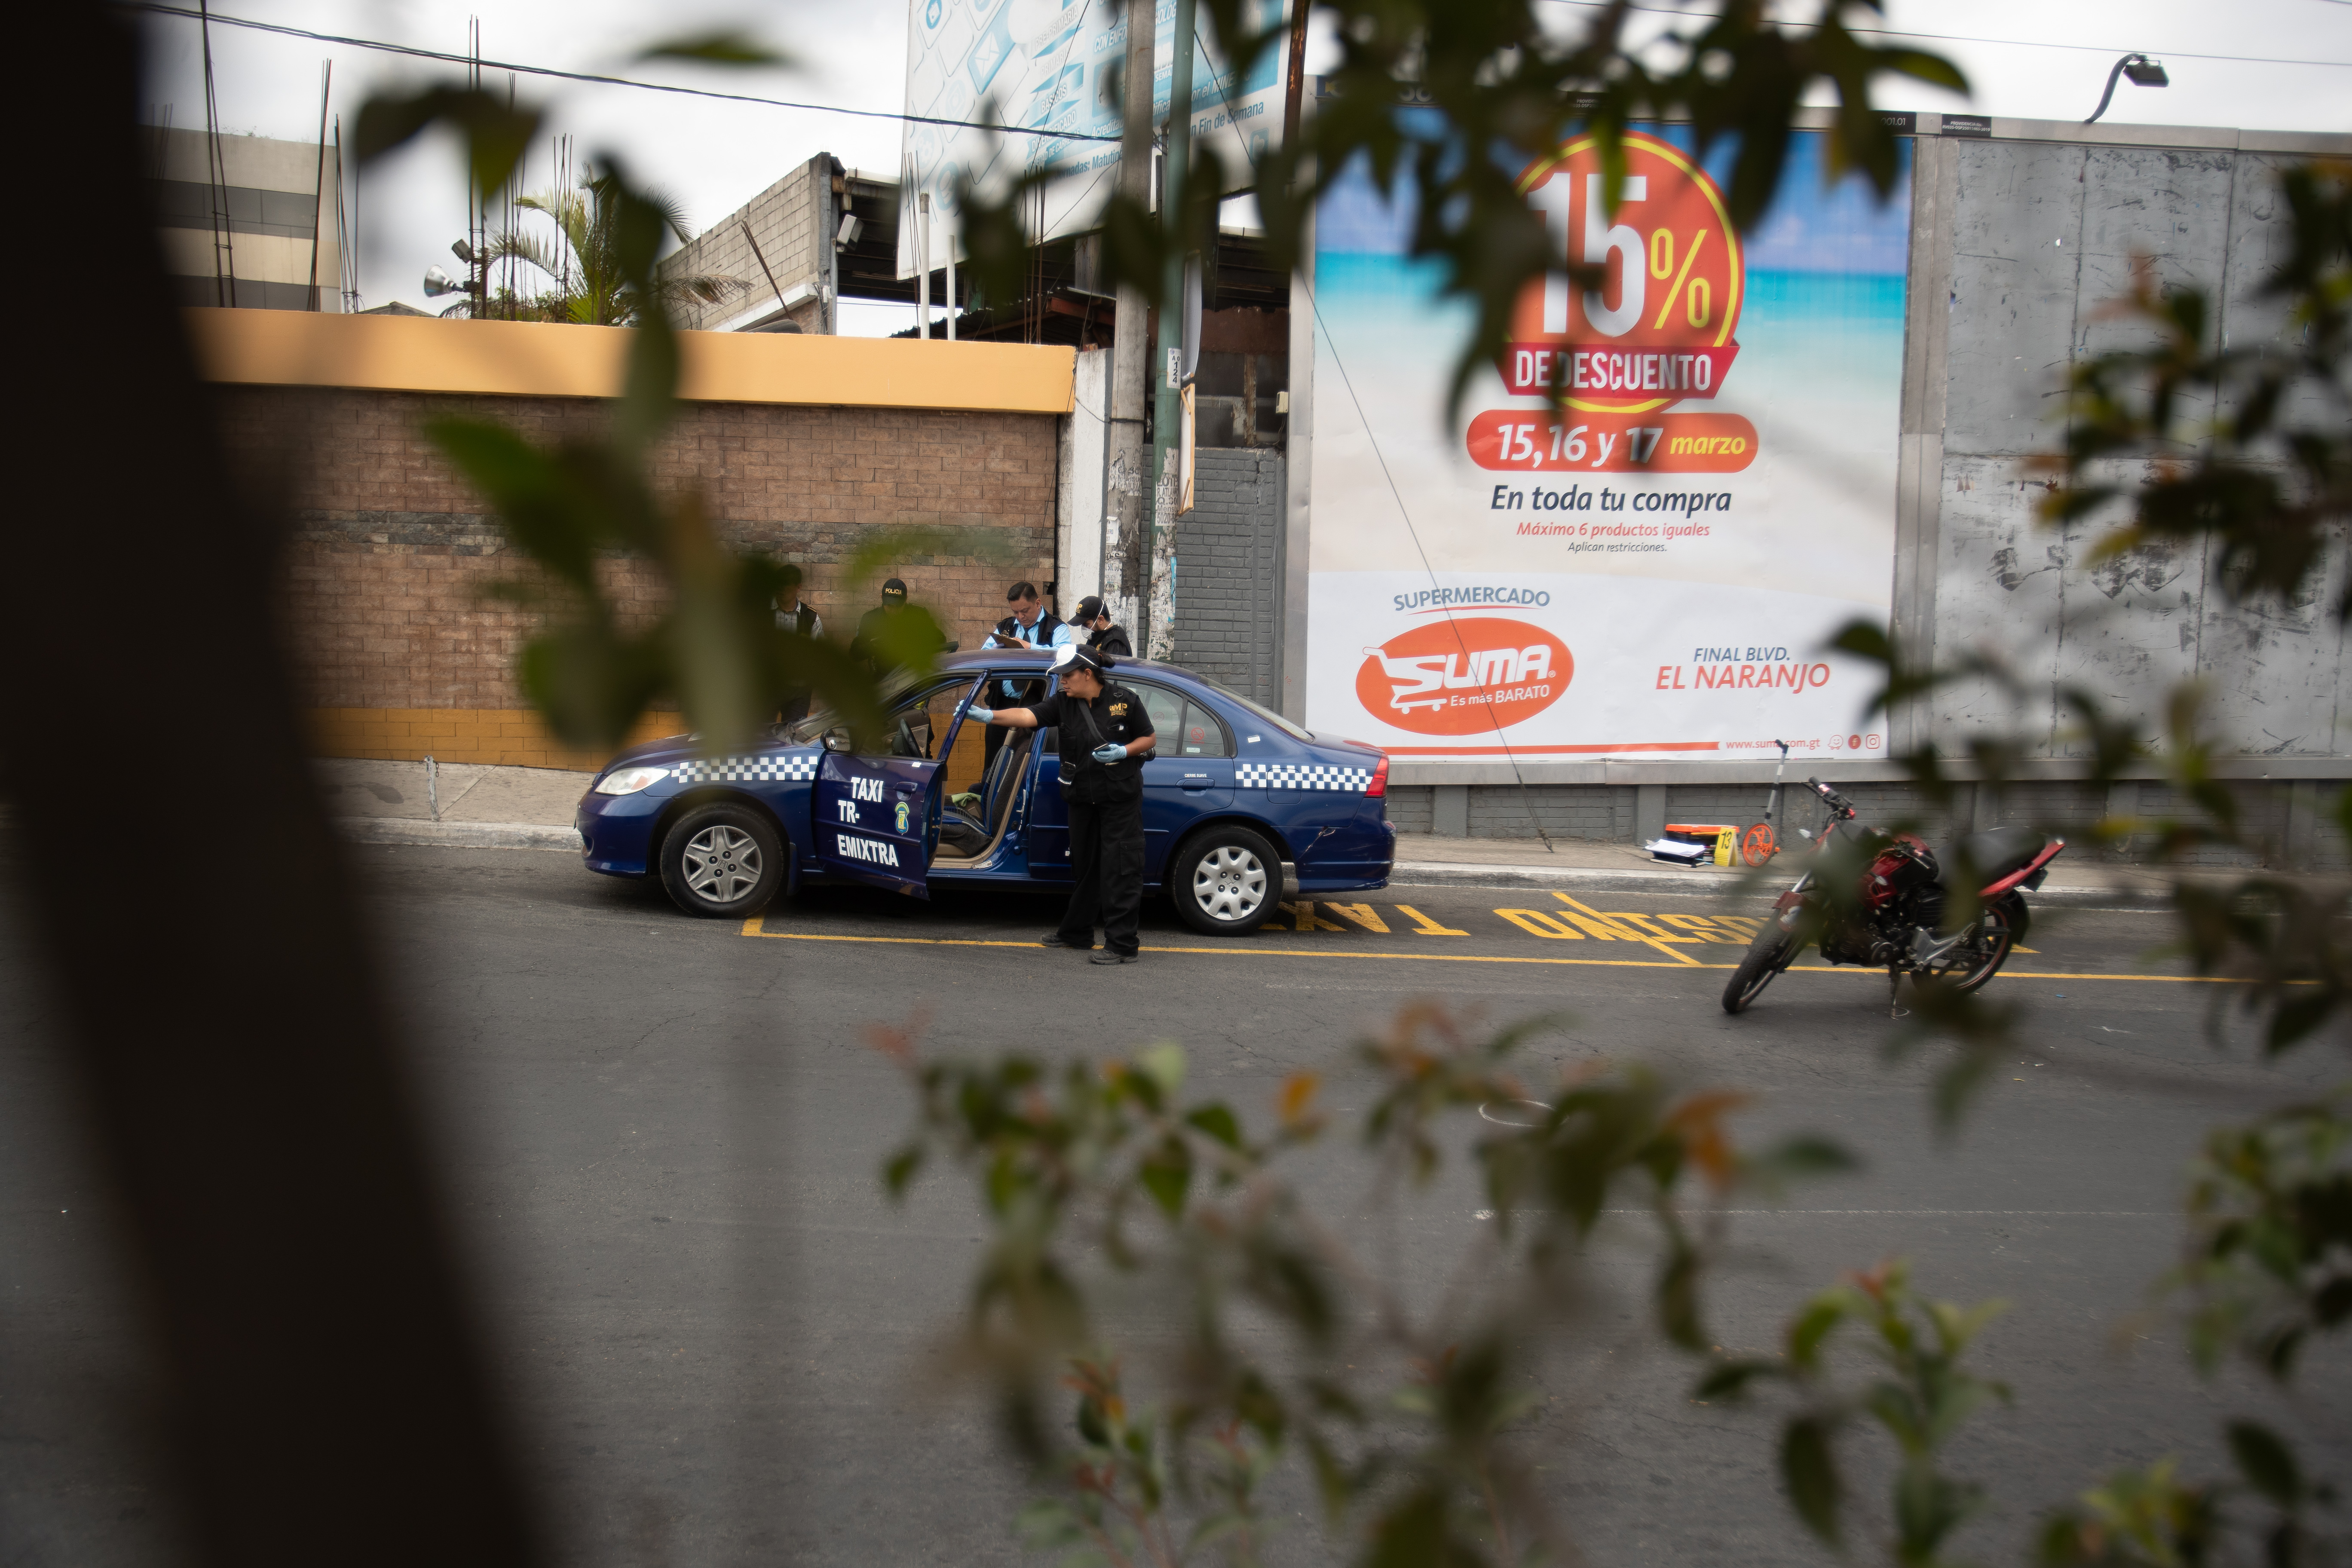 Día Violento en Guatemala. Situación de extorsiones con taxista.